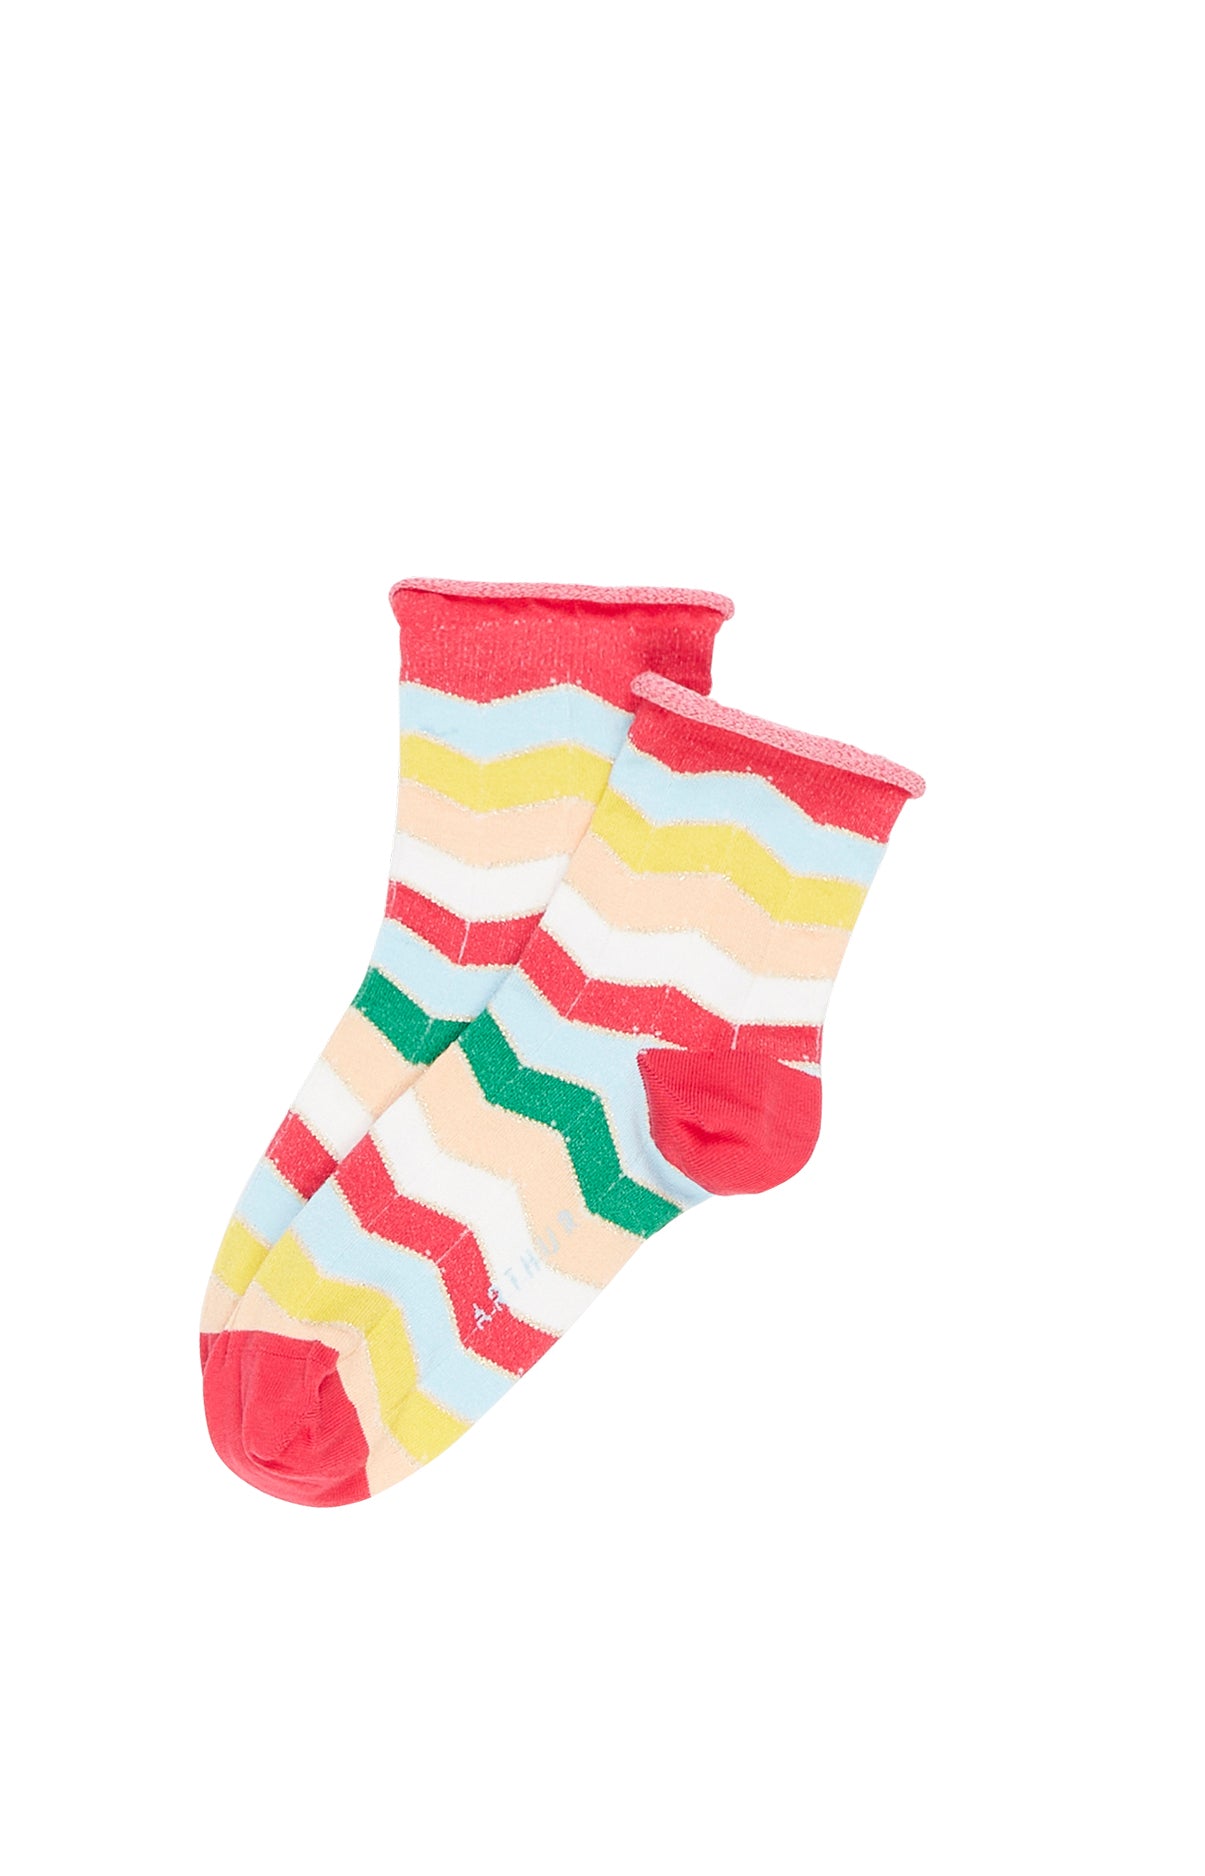 Multicolored Striped Socks